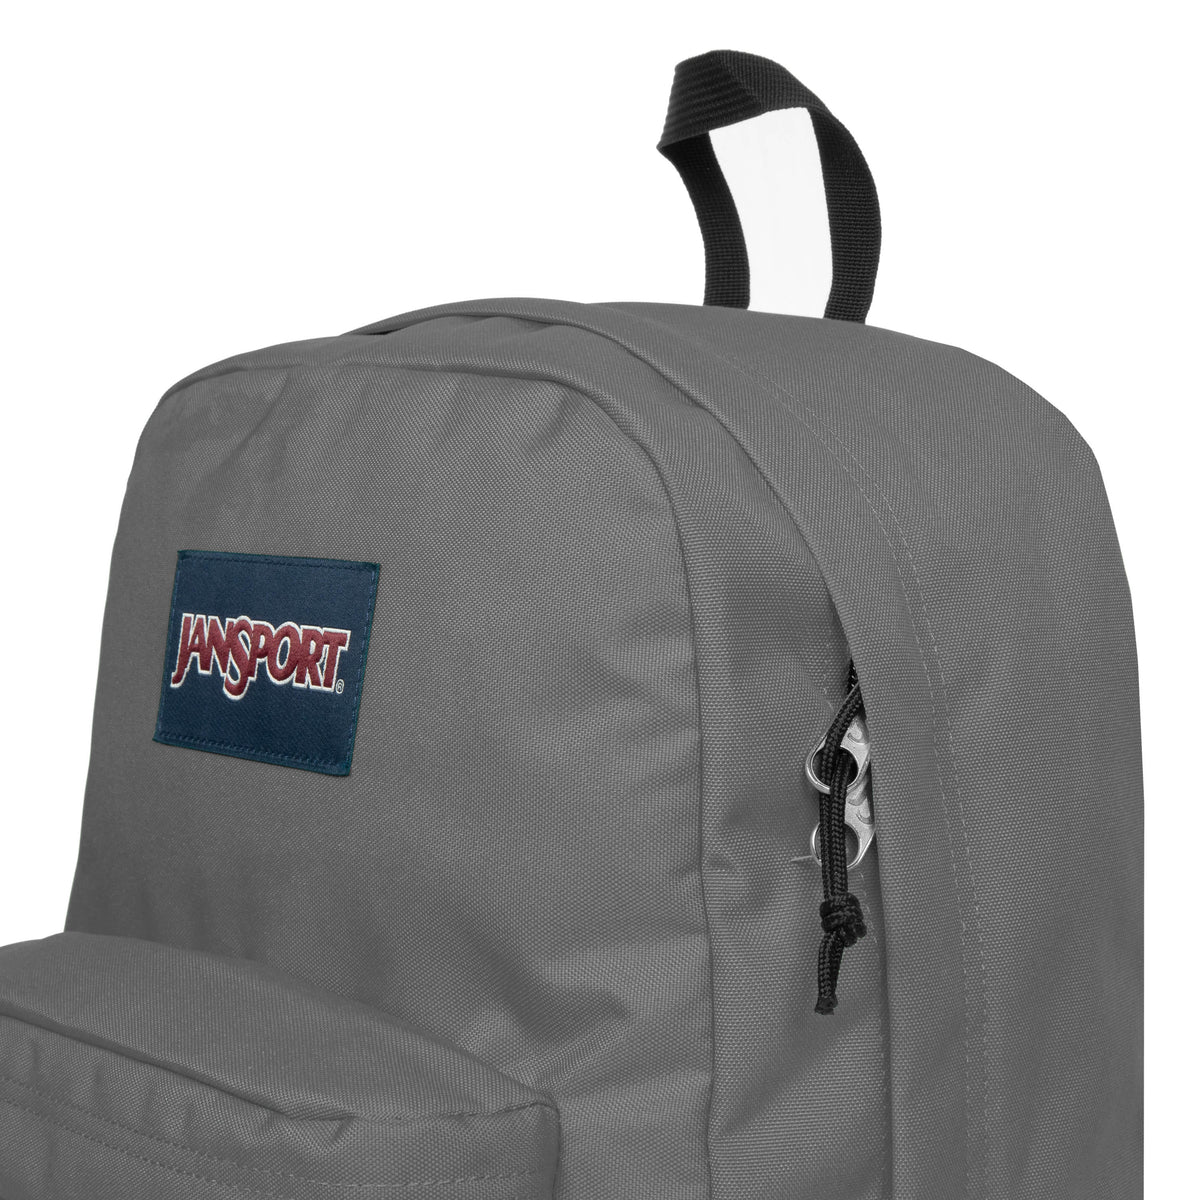 Jansport Superbreak One Backpack - Graphite Grey